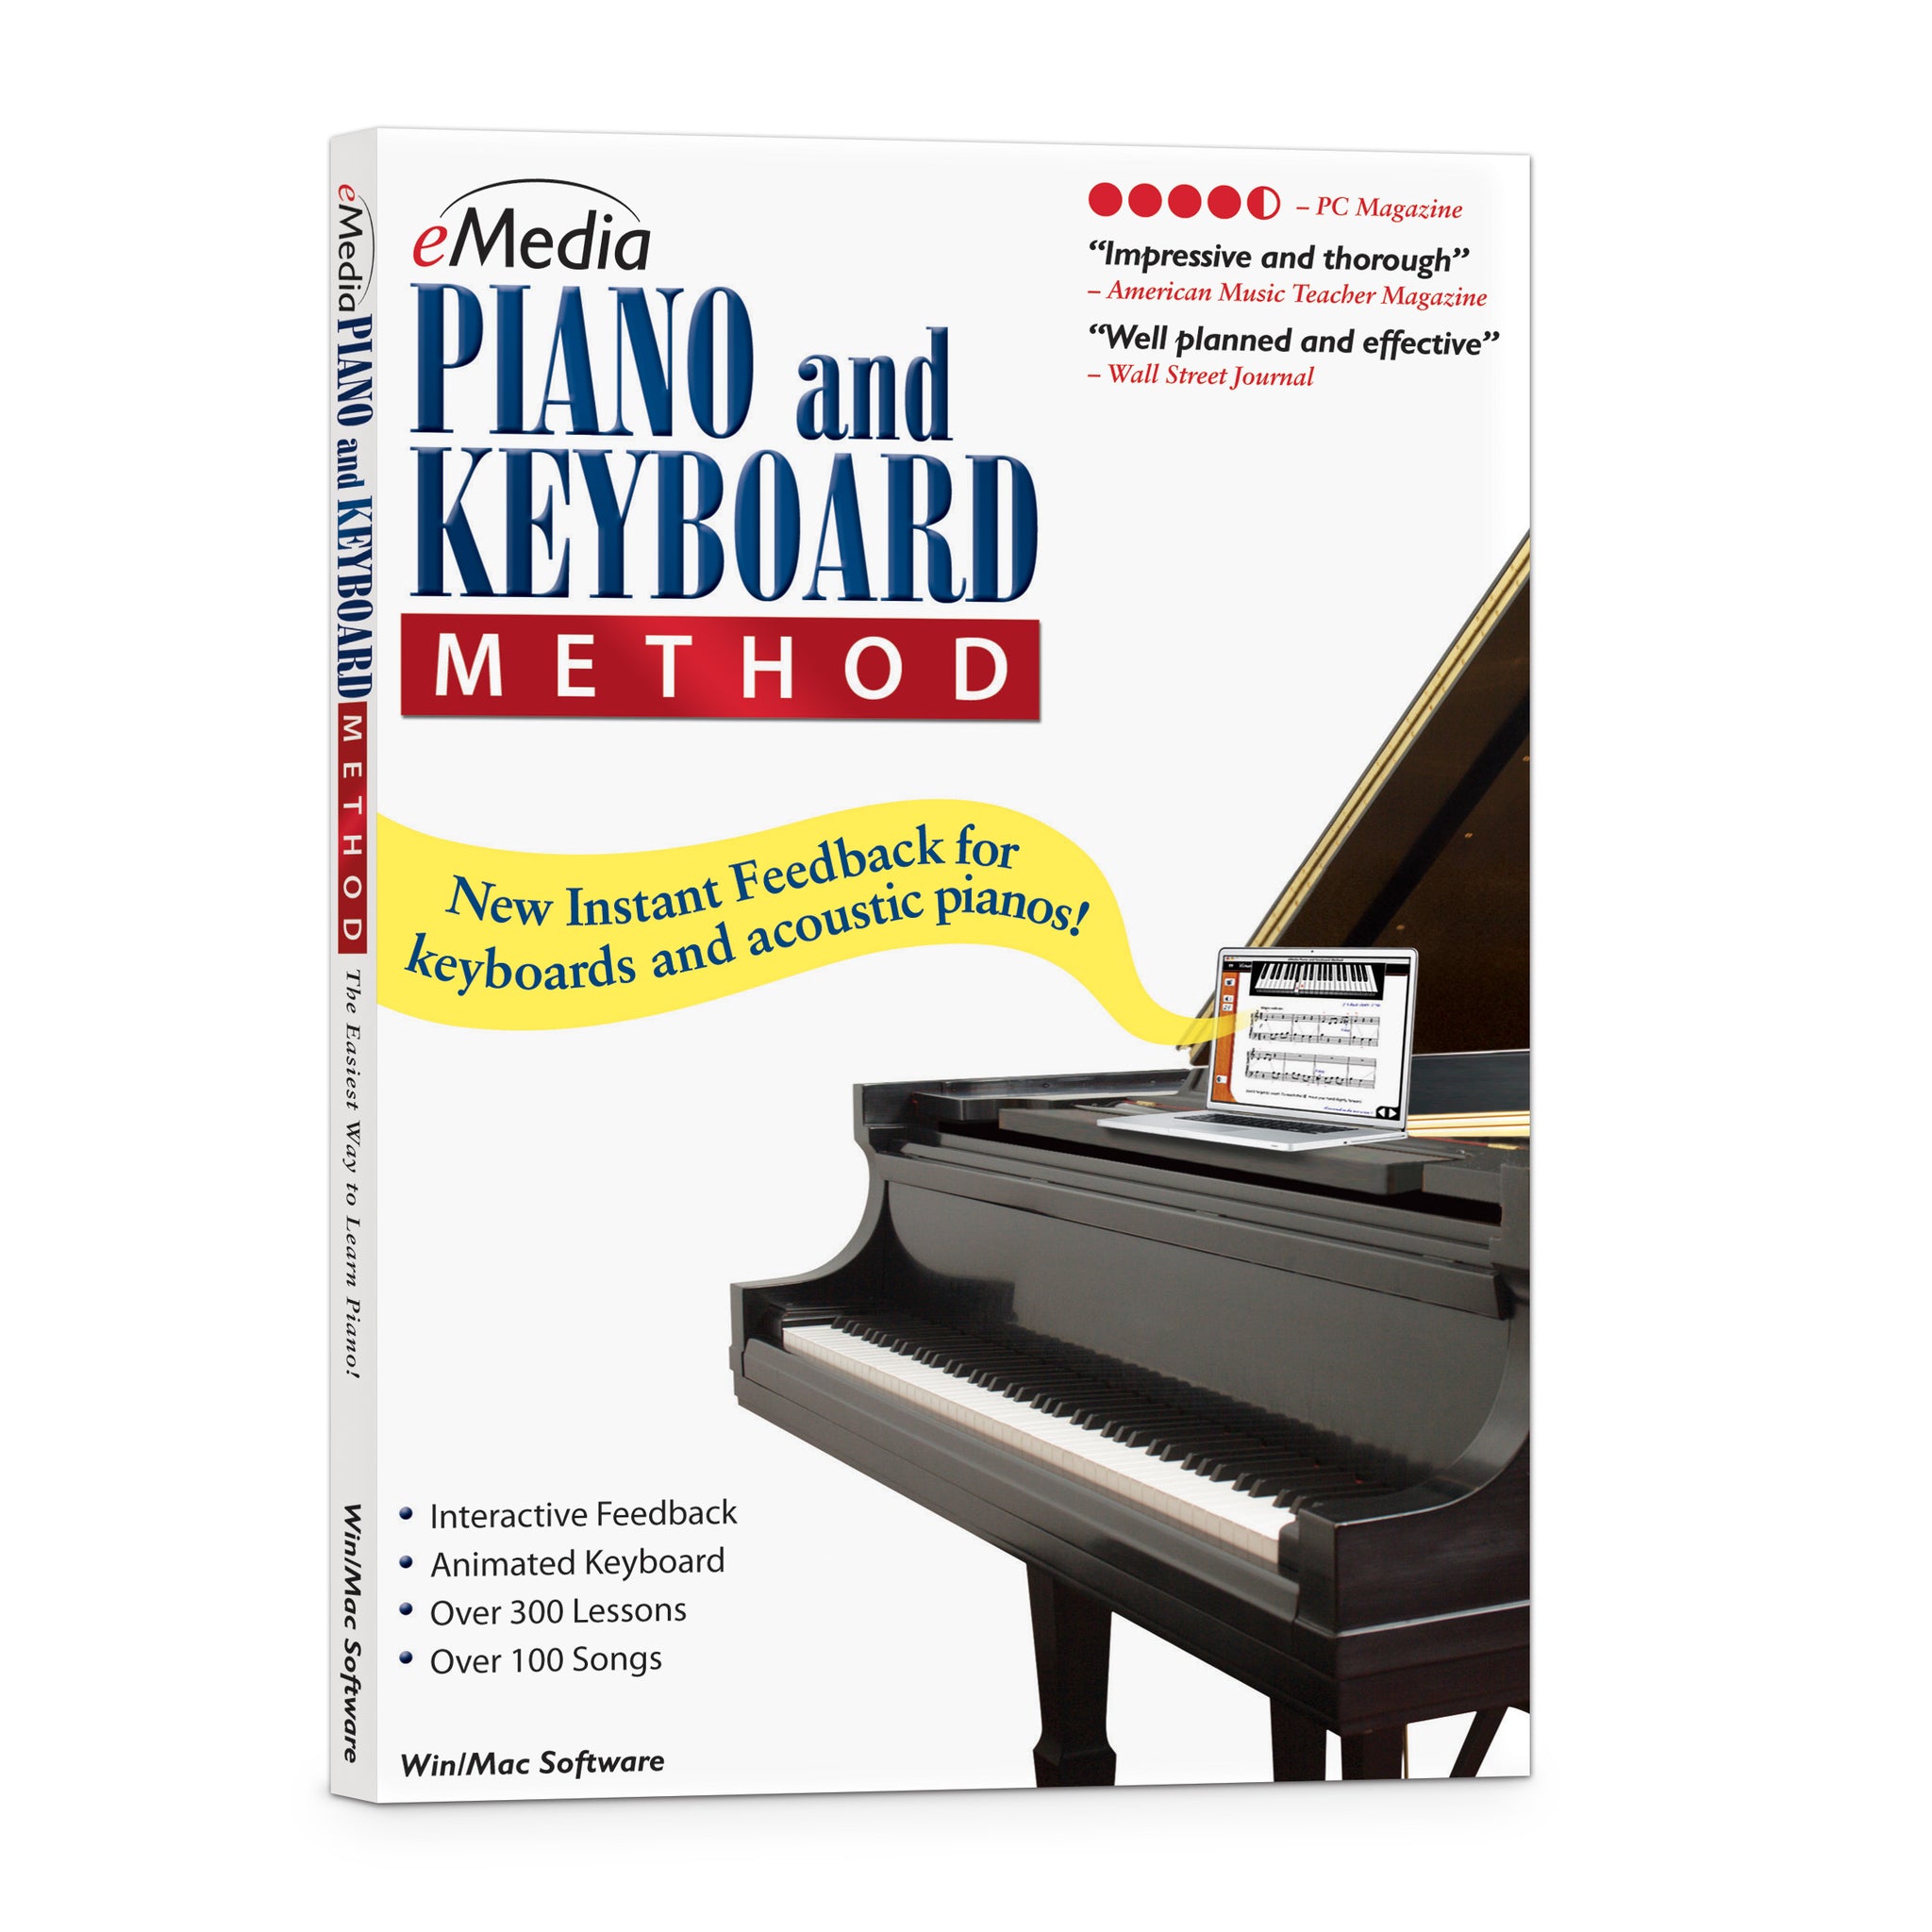 Instruments à clavier 88 touches de piano pliable intelligent